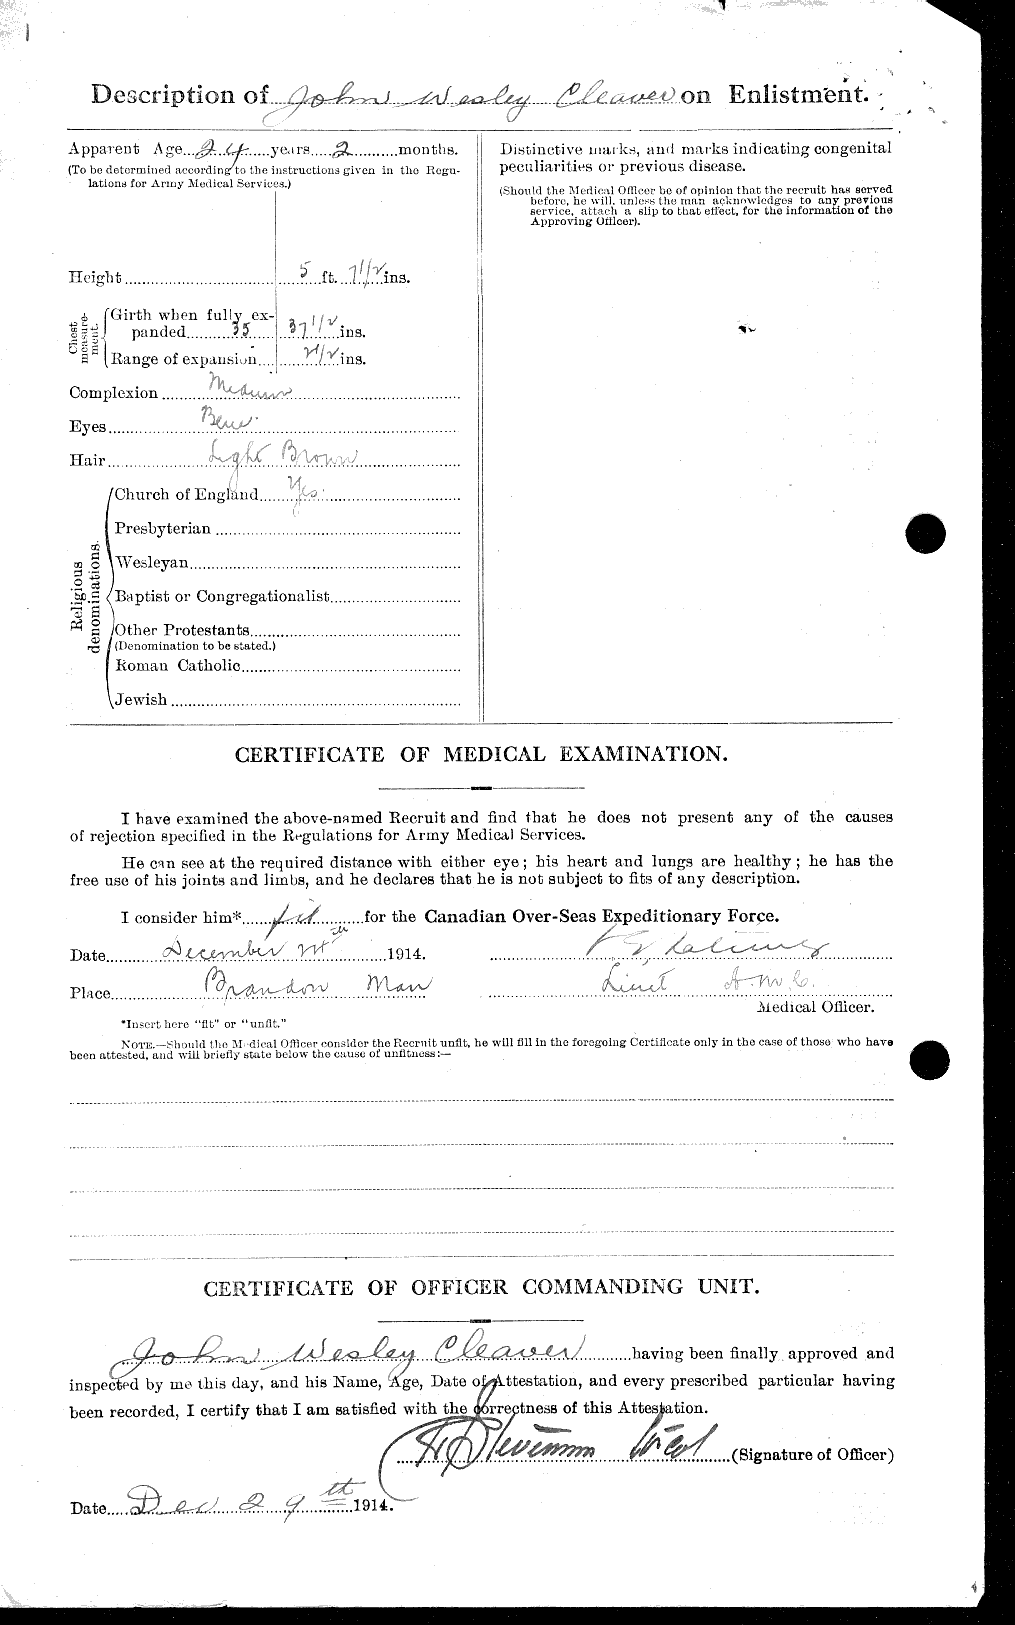 Dossiers du Personnel de la Première Guerre mondiale - CEC 019366b